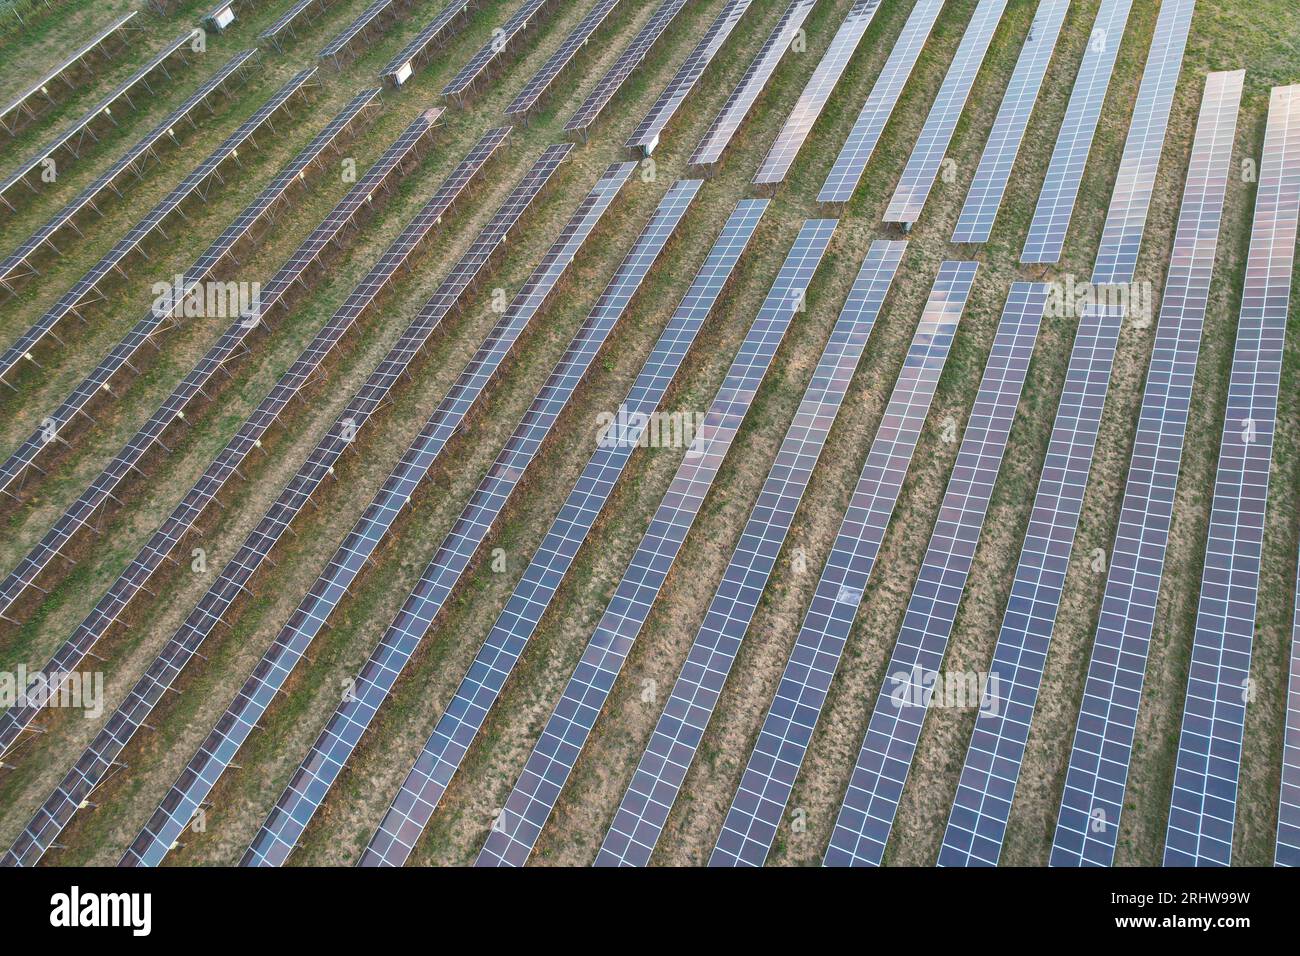 Centrale solaire moderne, panneaux photovoltaïques production d'électricité d'énergie verte, nouvelle centrale électrique, crise énergétique européenne 2022, accord vert, tchèque, aérien Banque D'Images